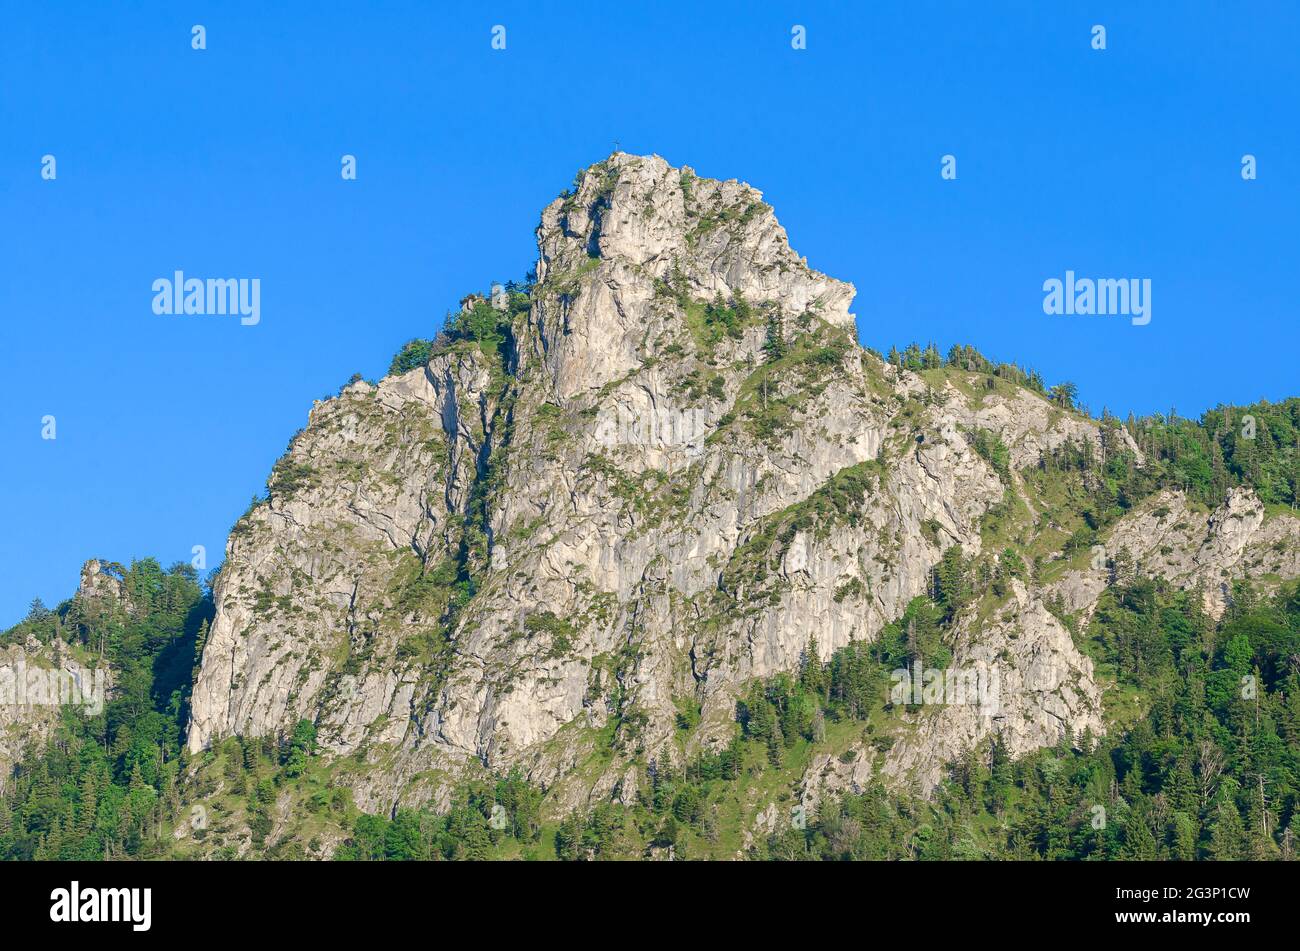 Formación de roca dentellada Nockstein en Salzburgo, Austria, Europa. Pertenece a Gaisberg, Hausberg de Salzburgo, las estribaciones de los Alpes Limestone Norte. Foto de stock